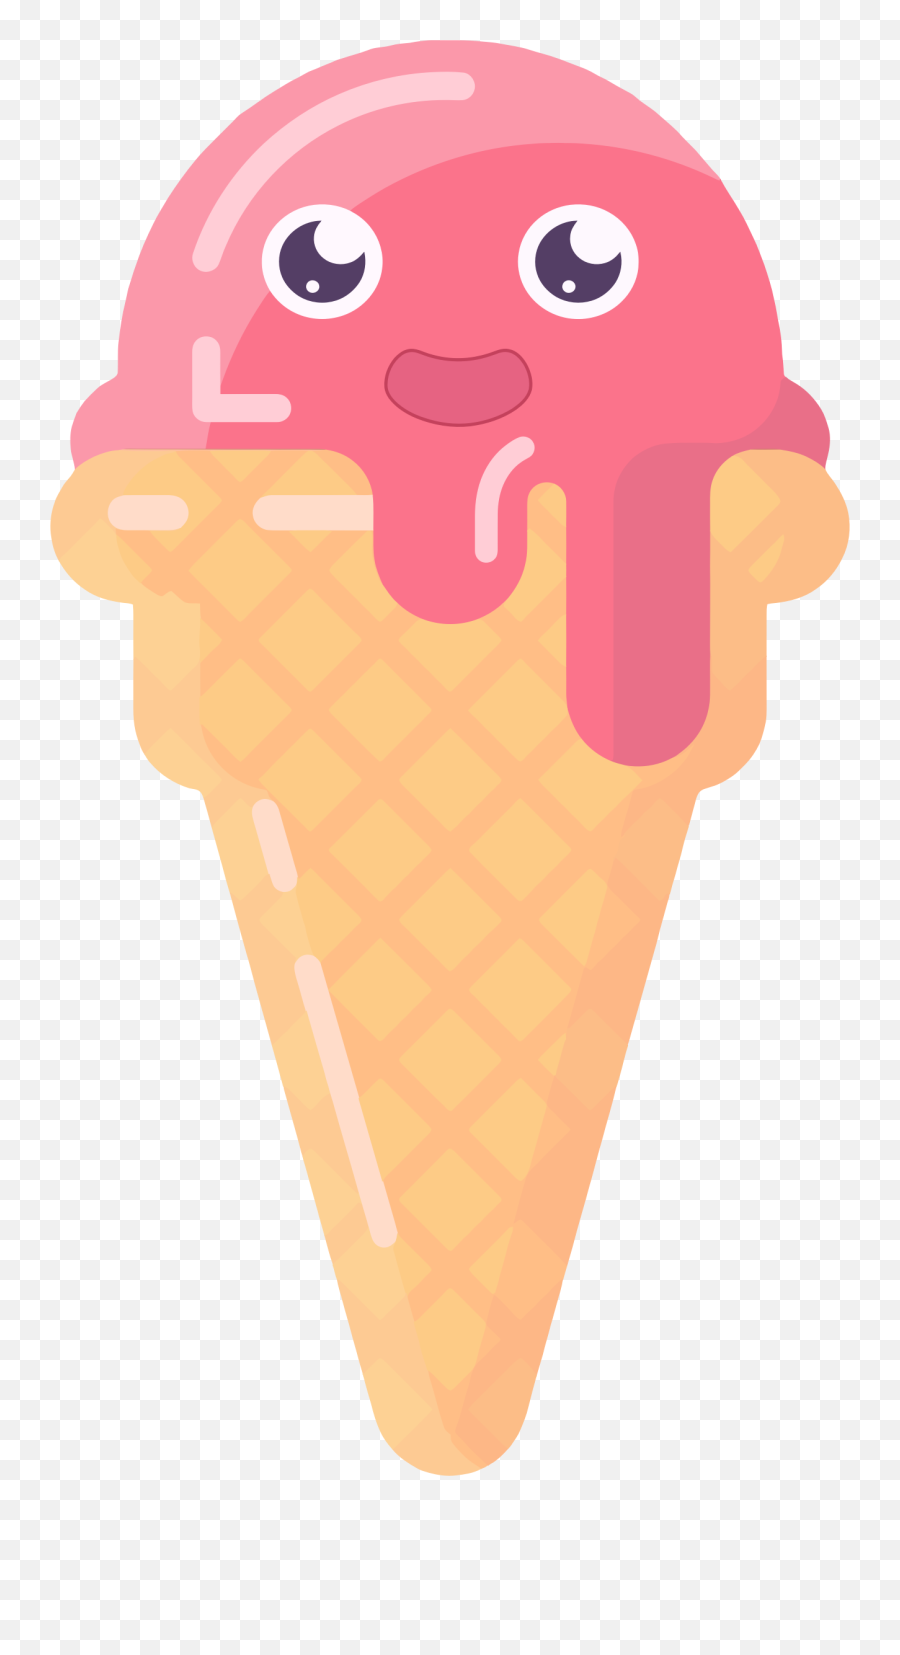 Cute Anthropomorphic Ice Cream Cone - Clip Art Ice Cream Cute Emoji,Ice Cream Cone Clipart